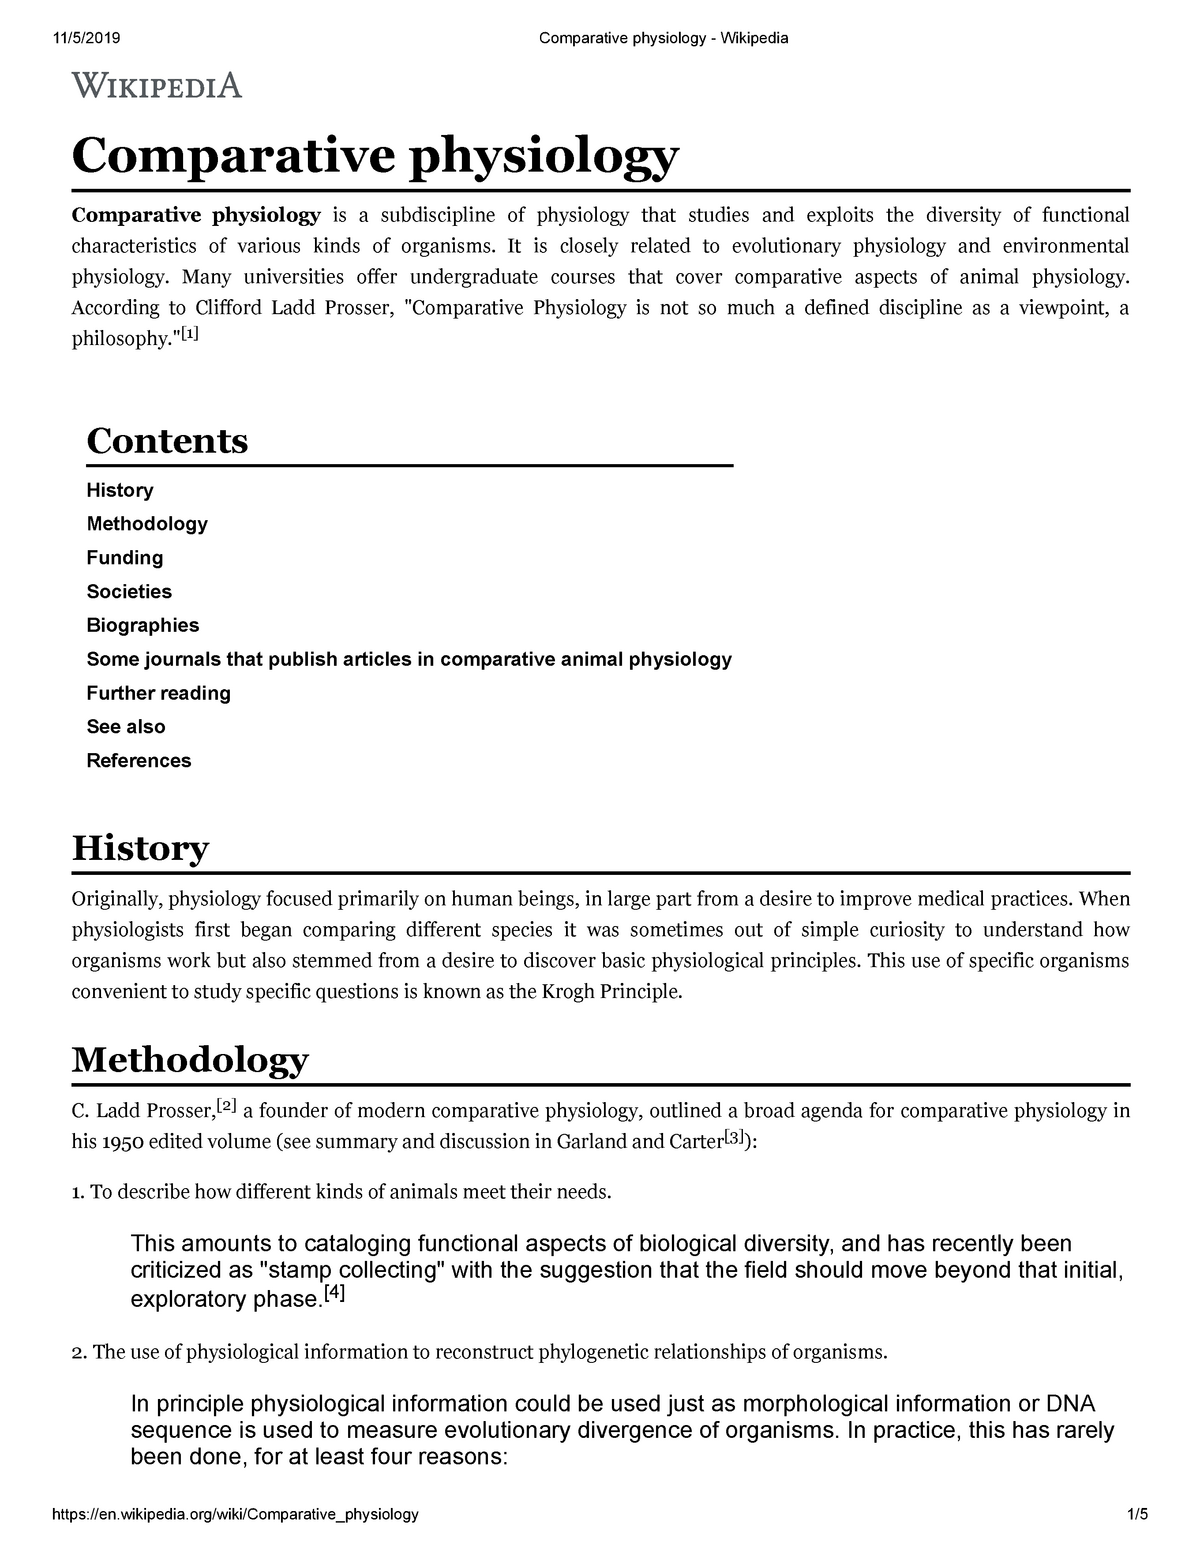 Comparative physiology 2019 11 05 - Comparative physiology Comparative  physiology is a subdiscipline - Studocu